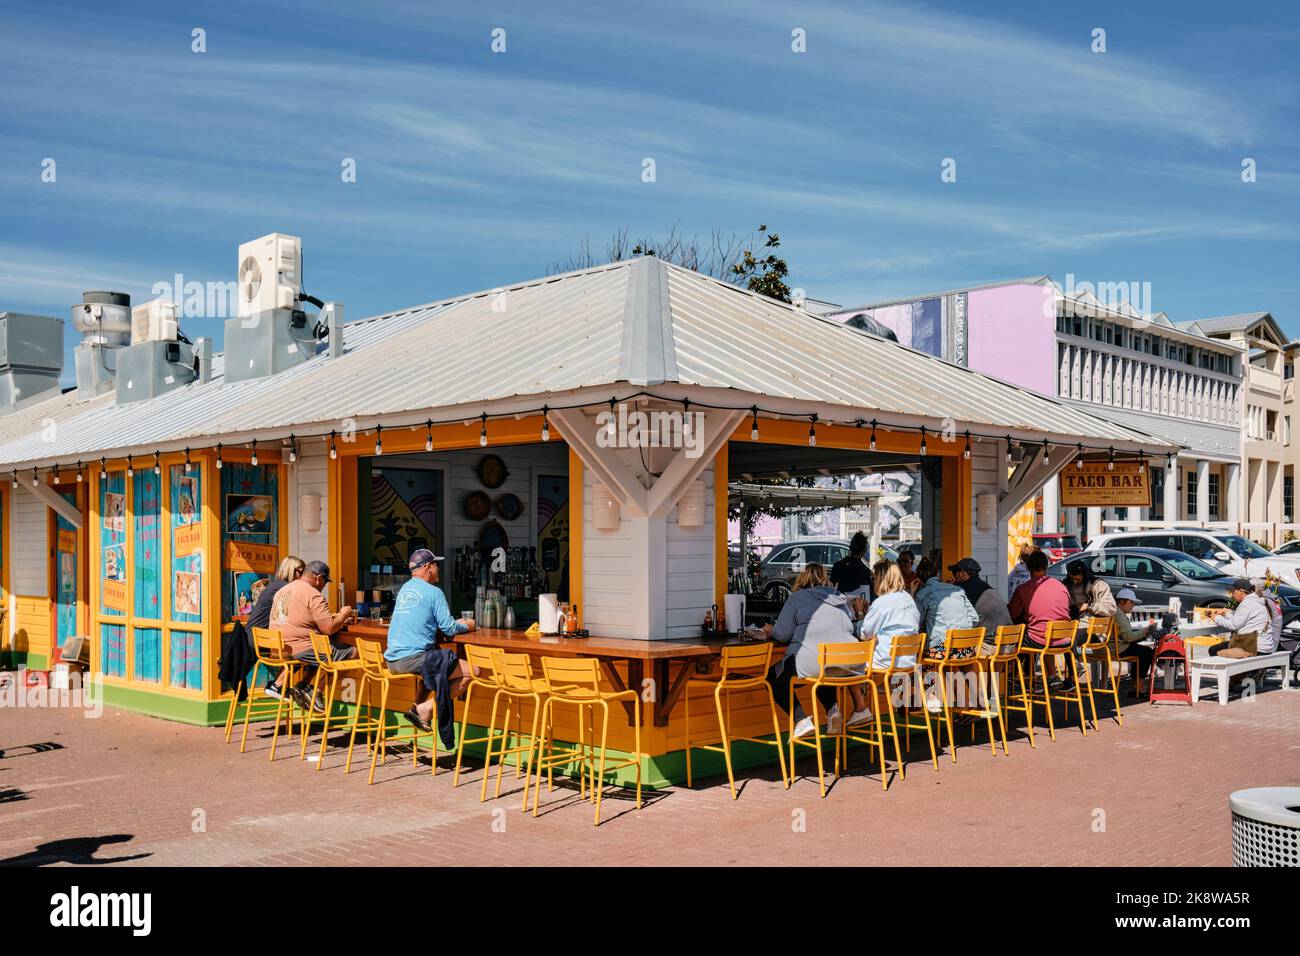 Les personnes qui commandent et mangent dans un bar à tacos extérieur ou un restaurant à tacos dans la station balnéaire de Seaside Florida, États-Unis. Banque D'Images